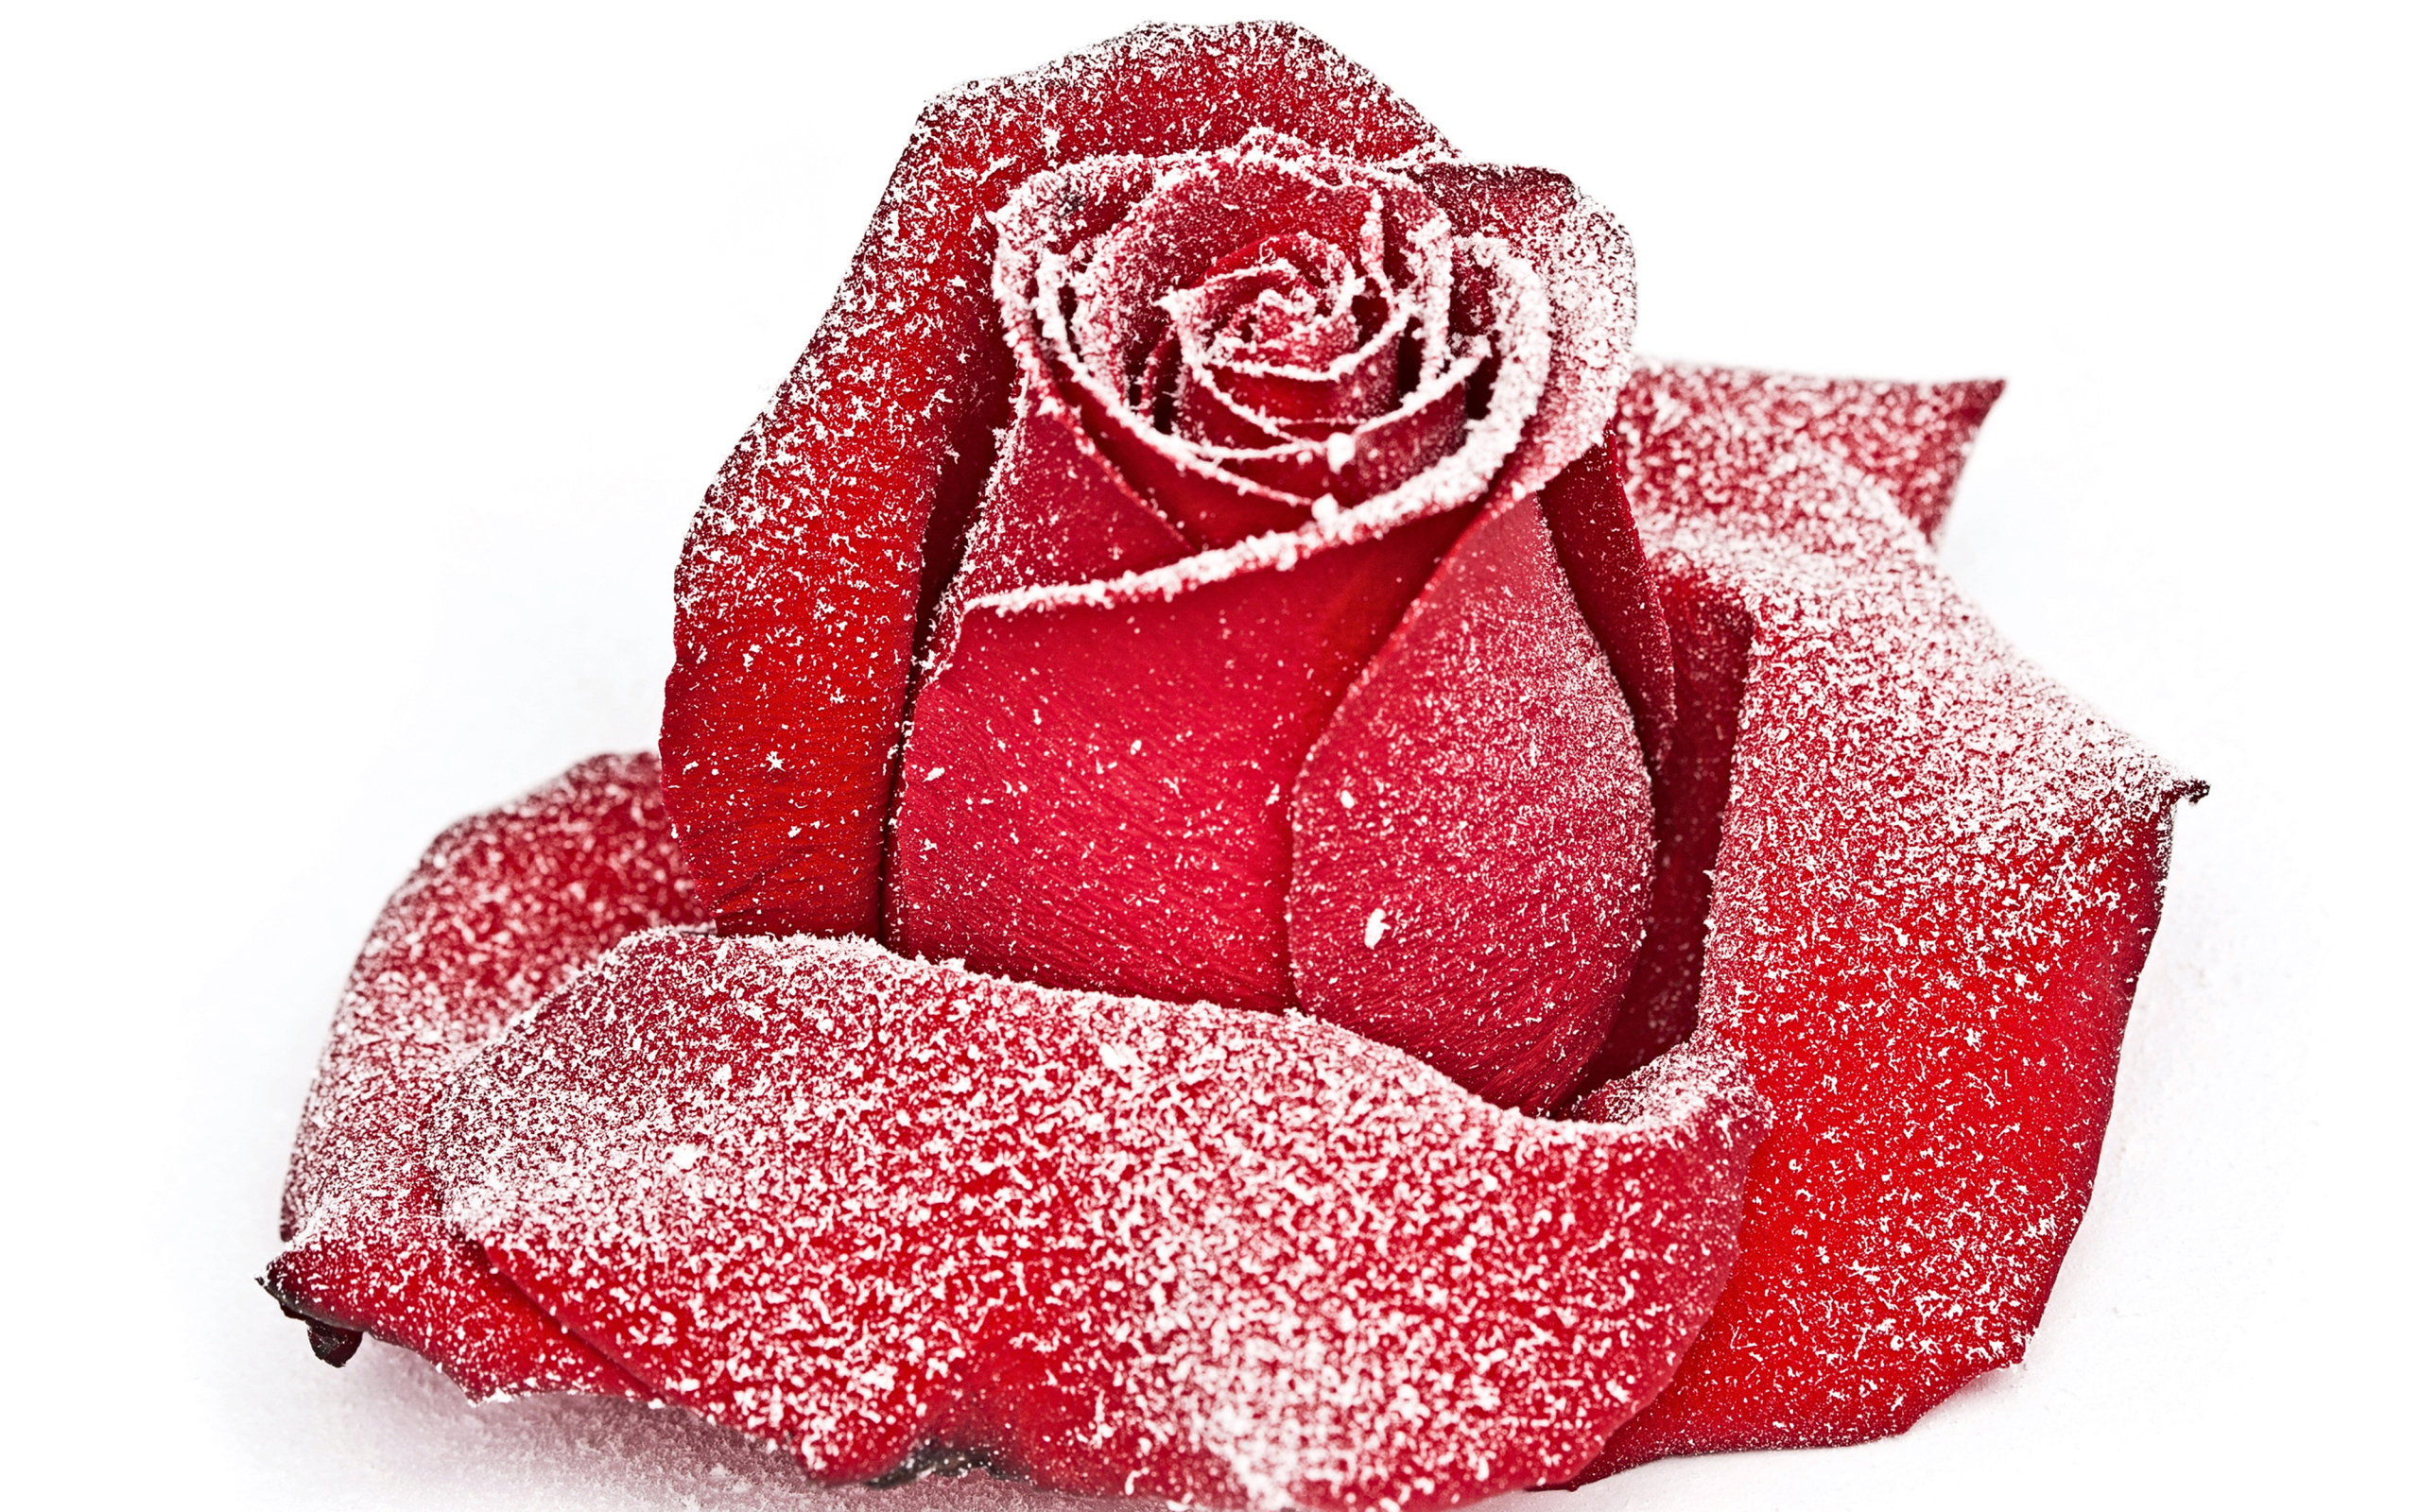 Сорванная красная роза в инее на снегу 